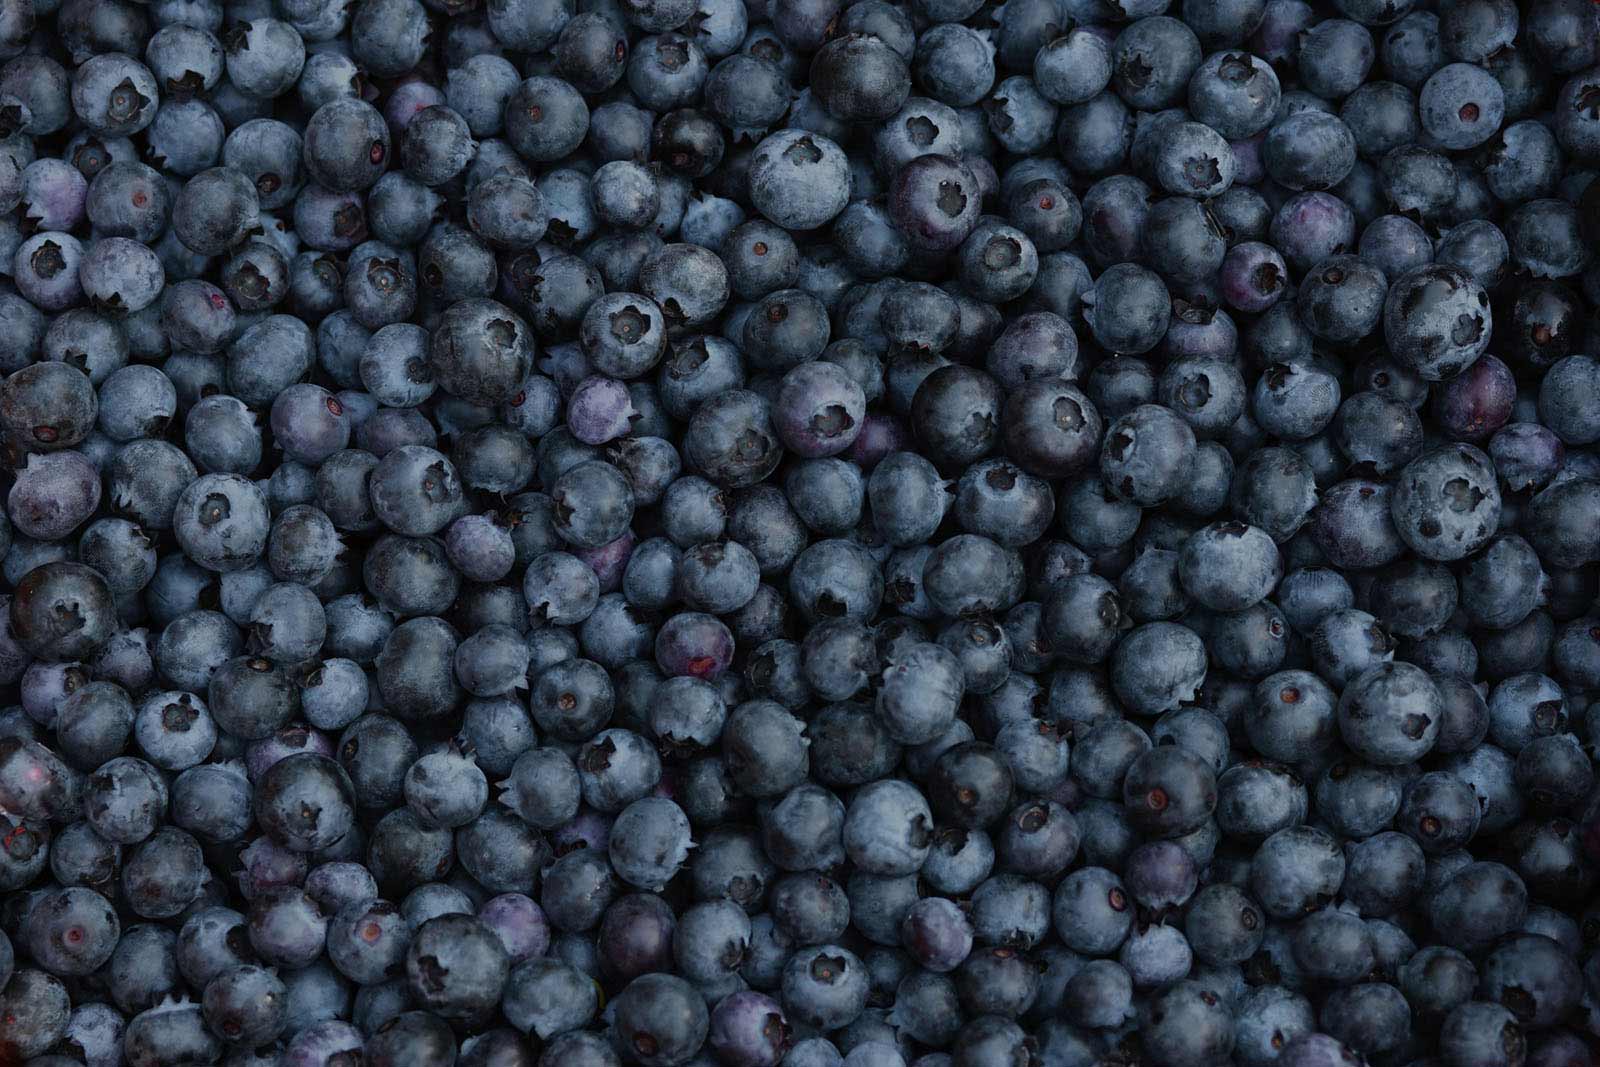 Sno Pac Organic Bluberries